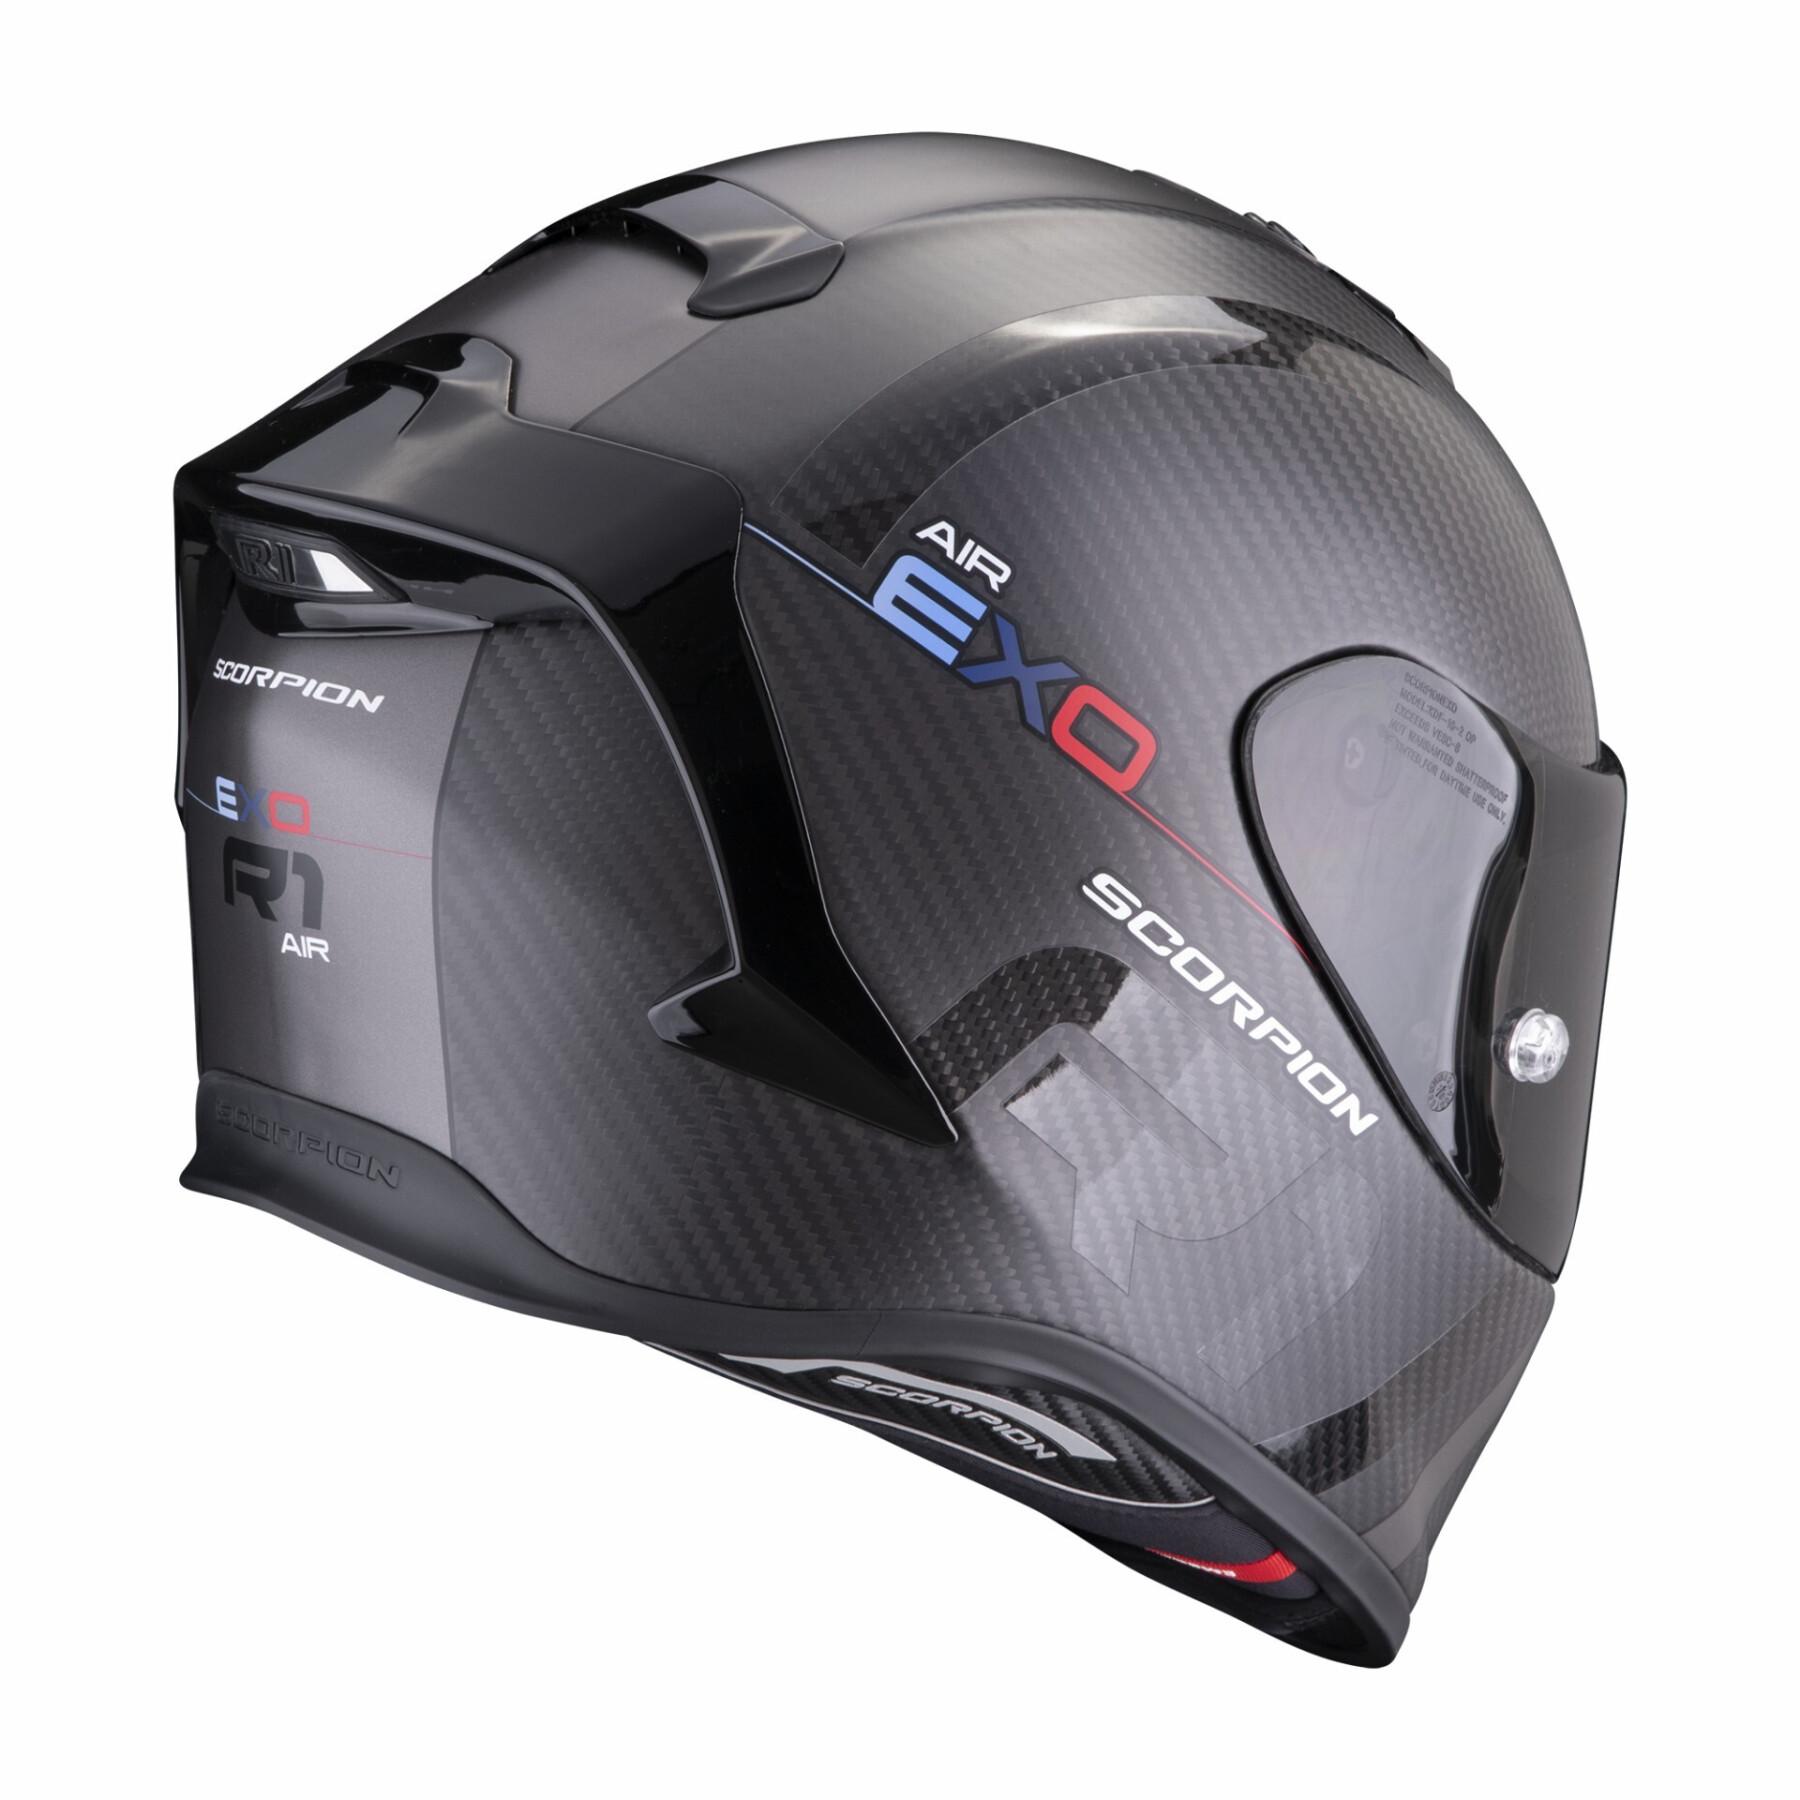 Kask motocyklowy z pełną twarzą Scorpion Exo-R1 Evo Carbon Air MG ECE 22-06